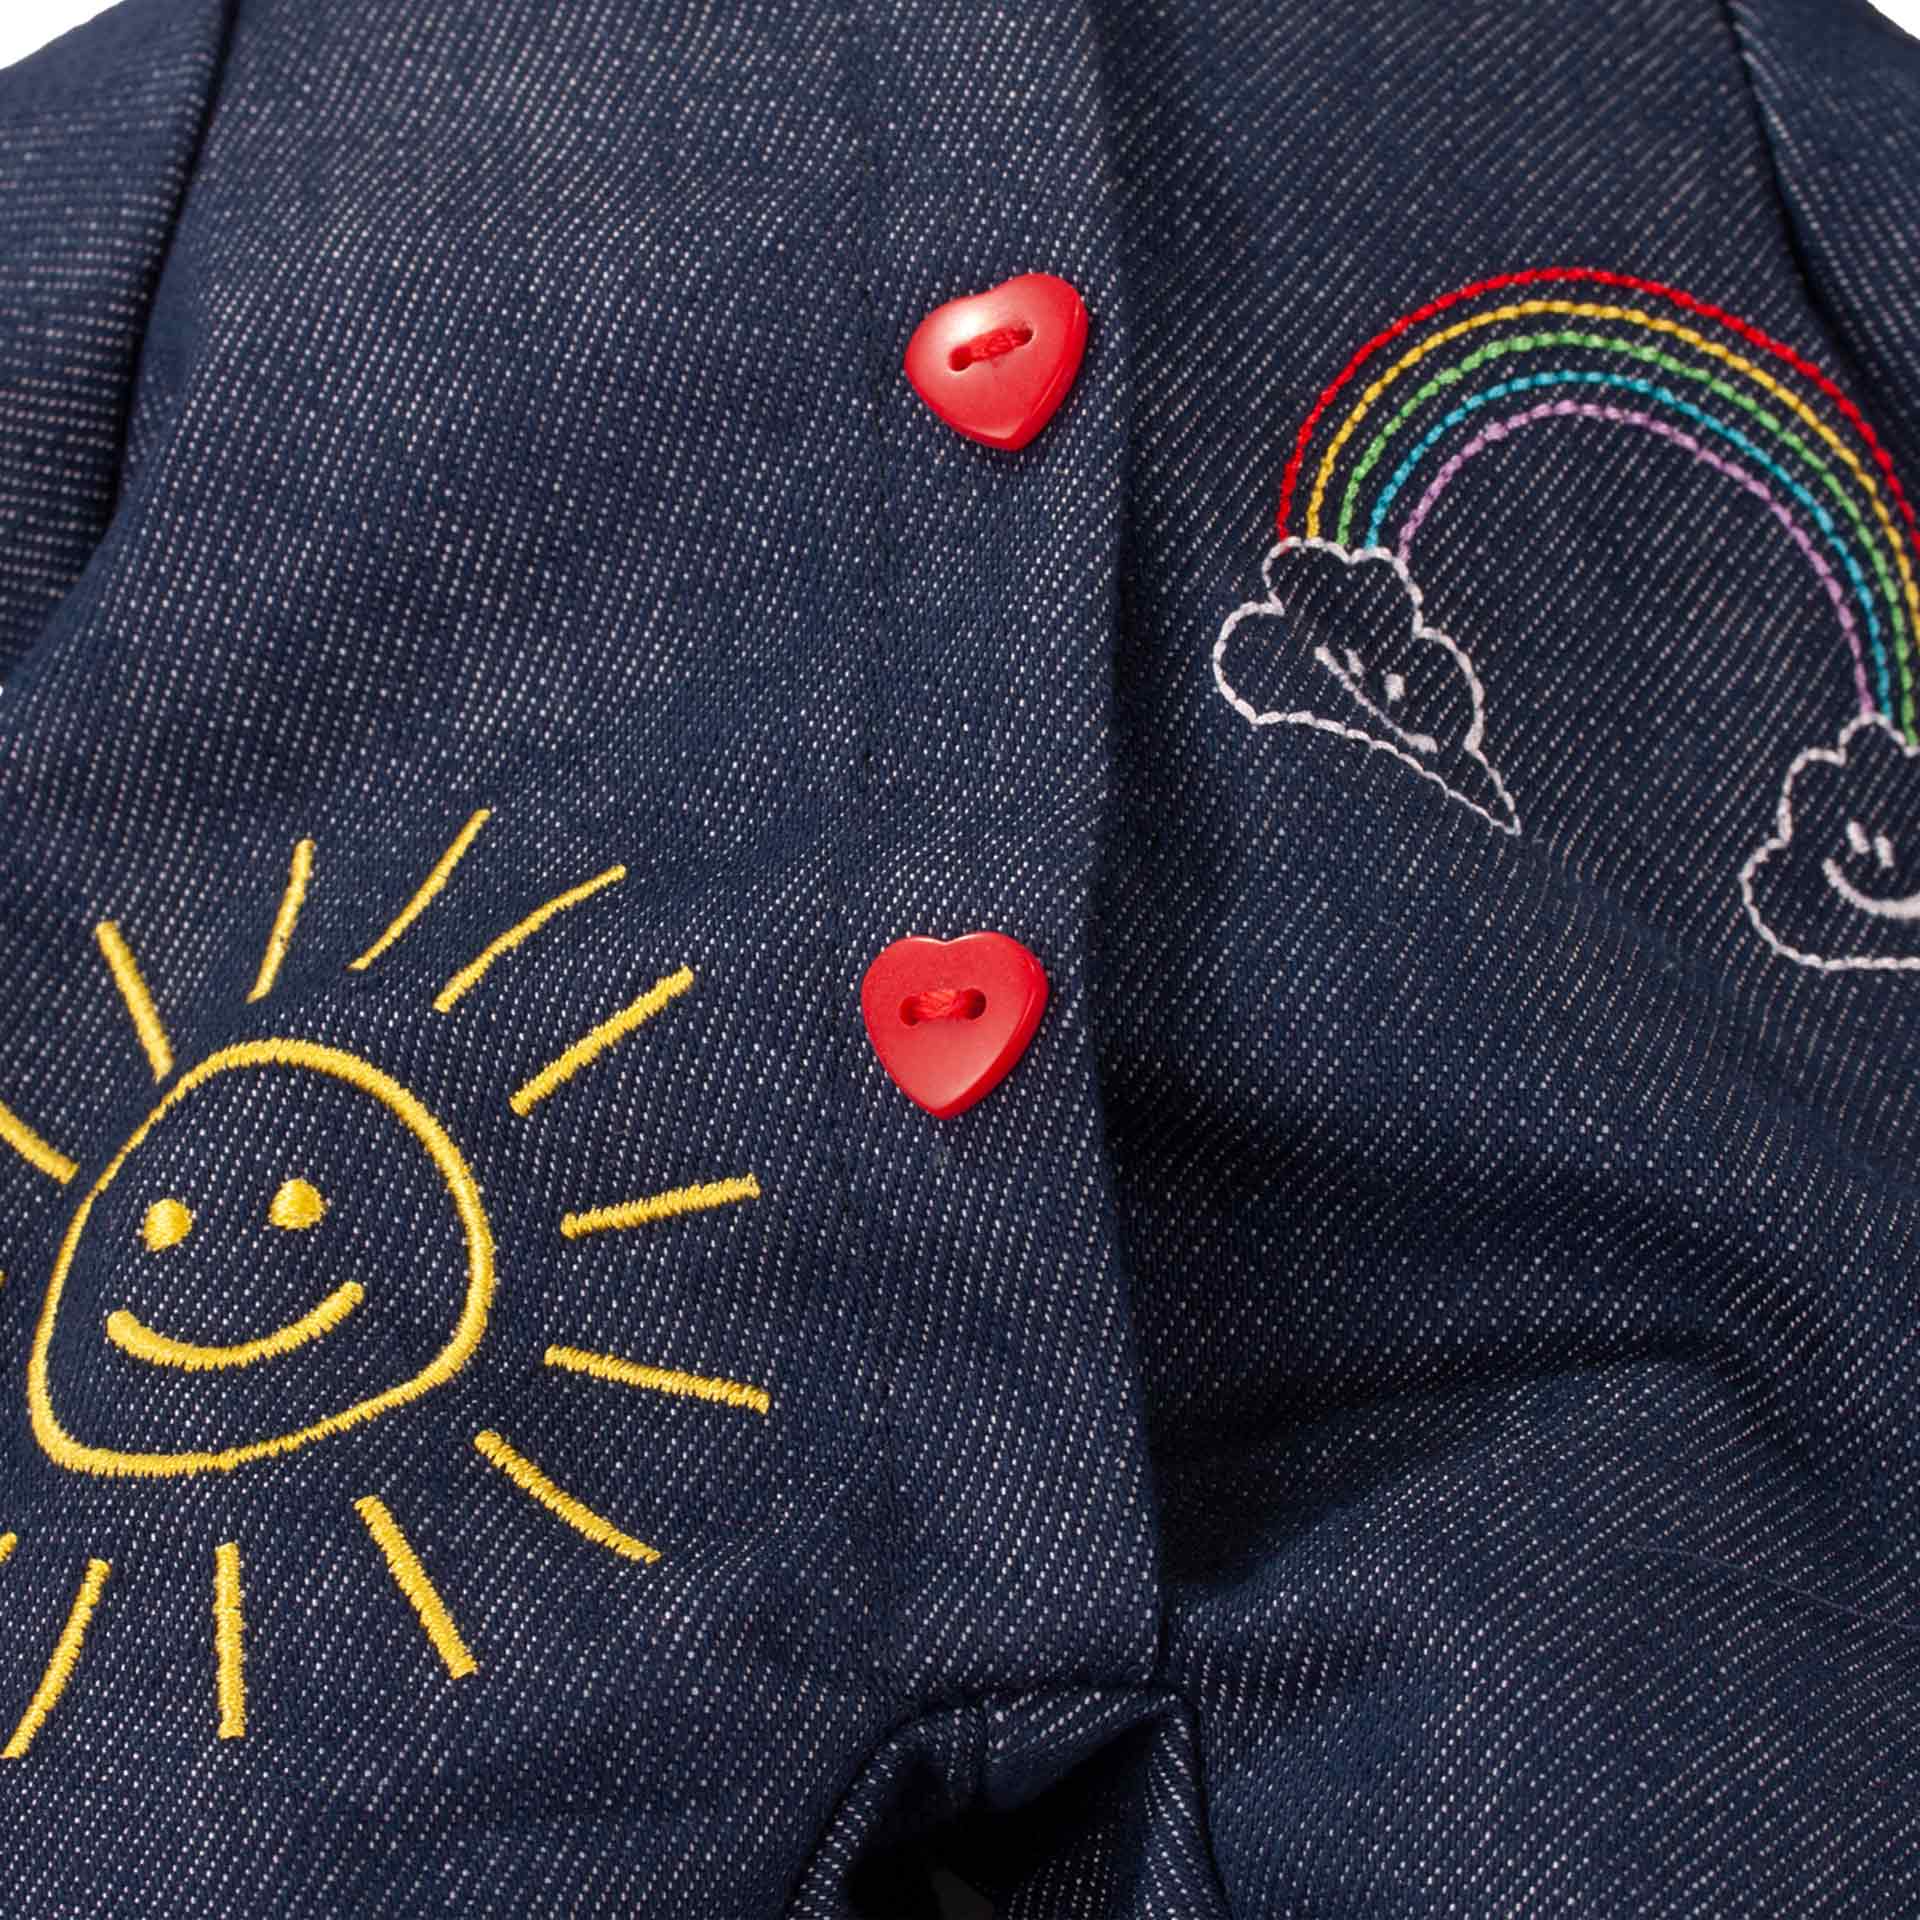 muffin-rainbow-babypuppe-denimanzug-sonne-regenbogen-goetz-stickerei